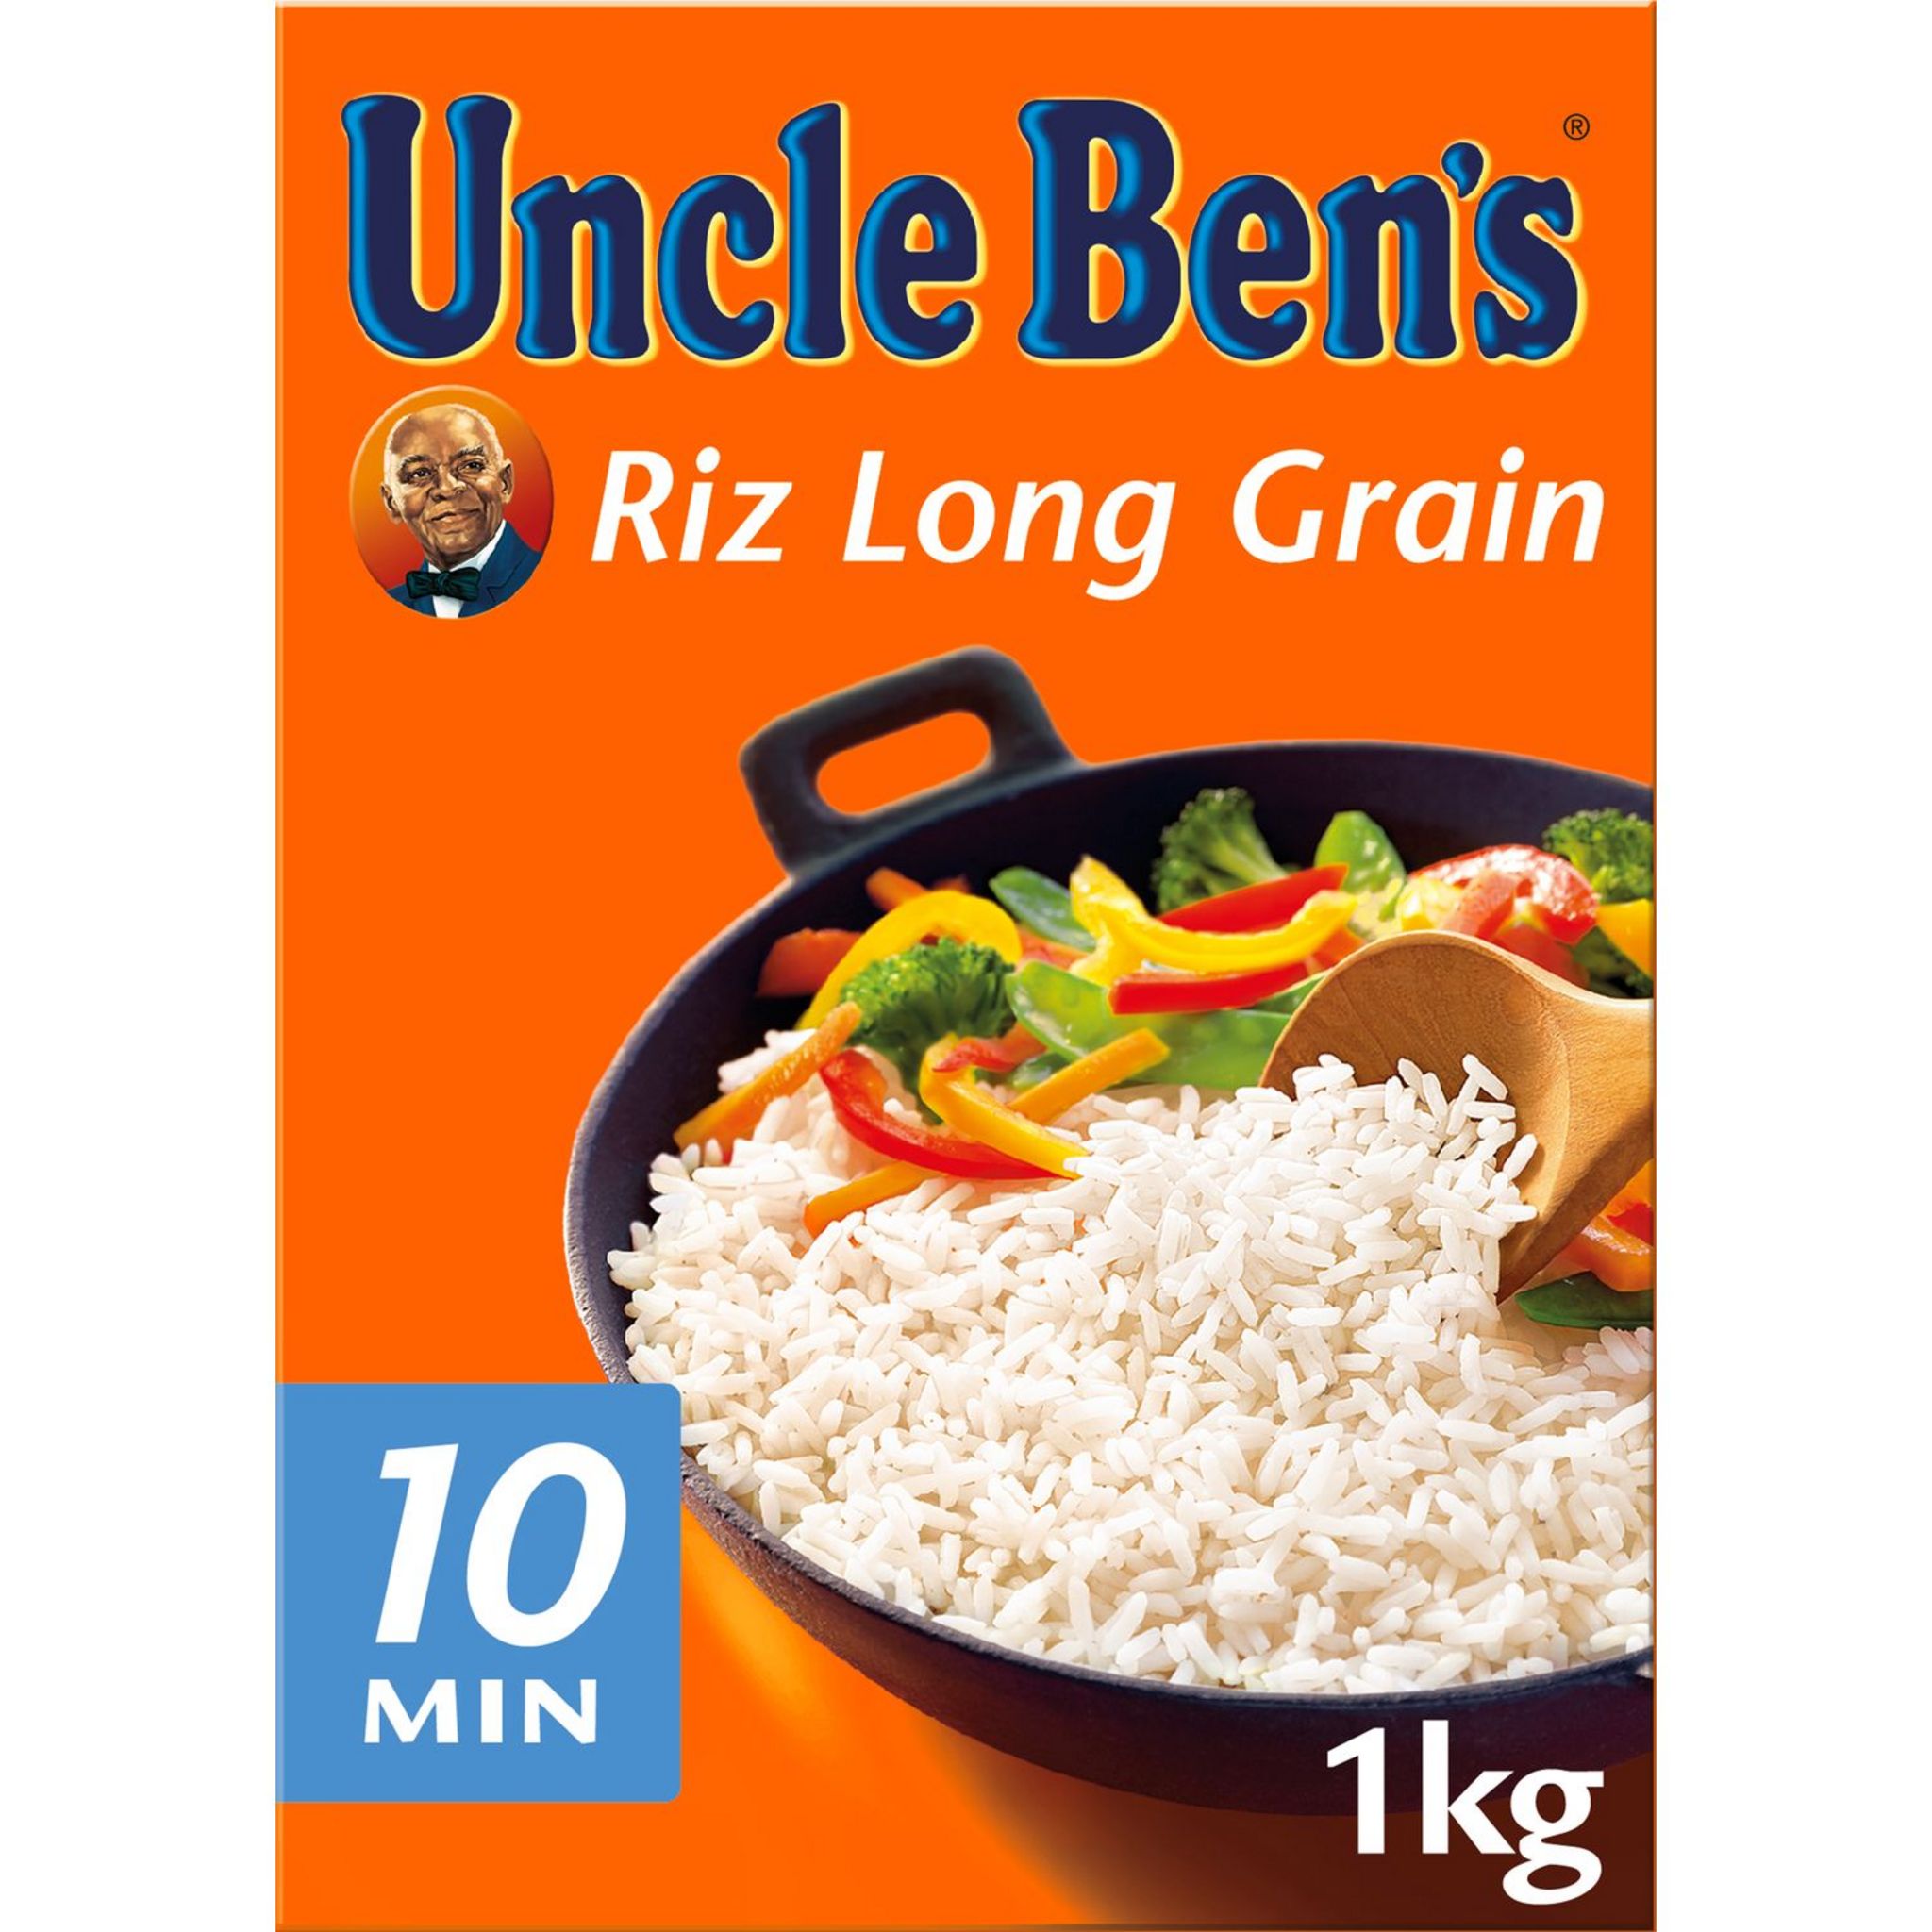 BEN'S ORIGINAL Riz long grain prêt en 10 min 1kg pas cher 